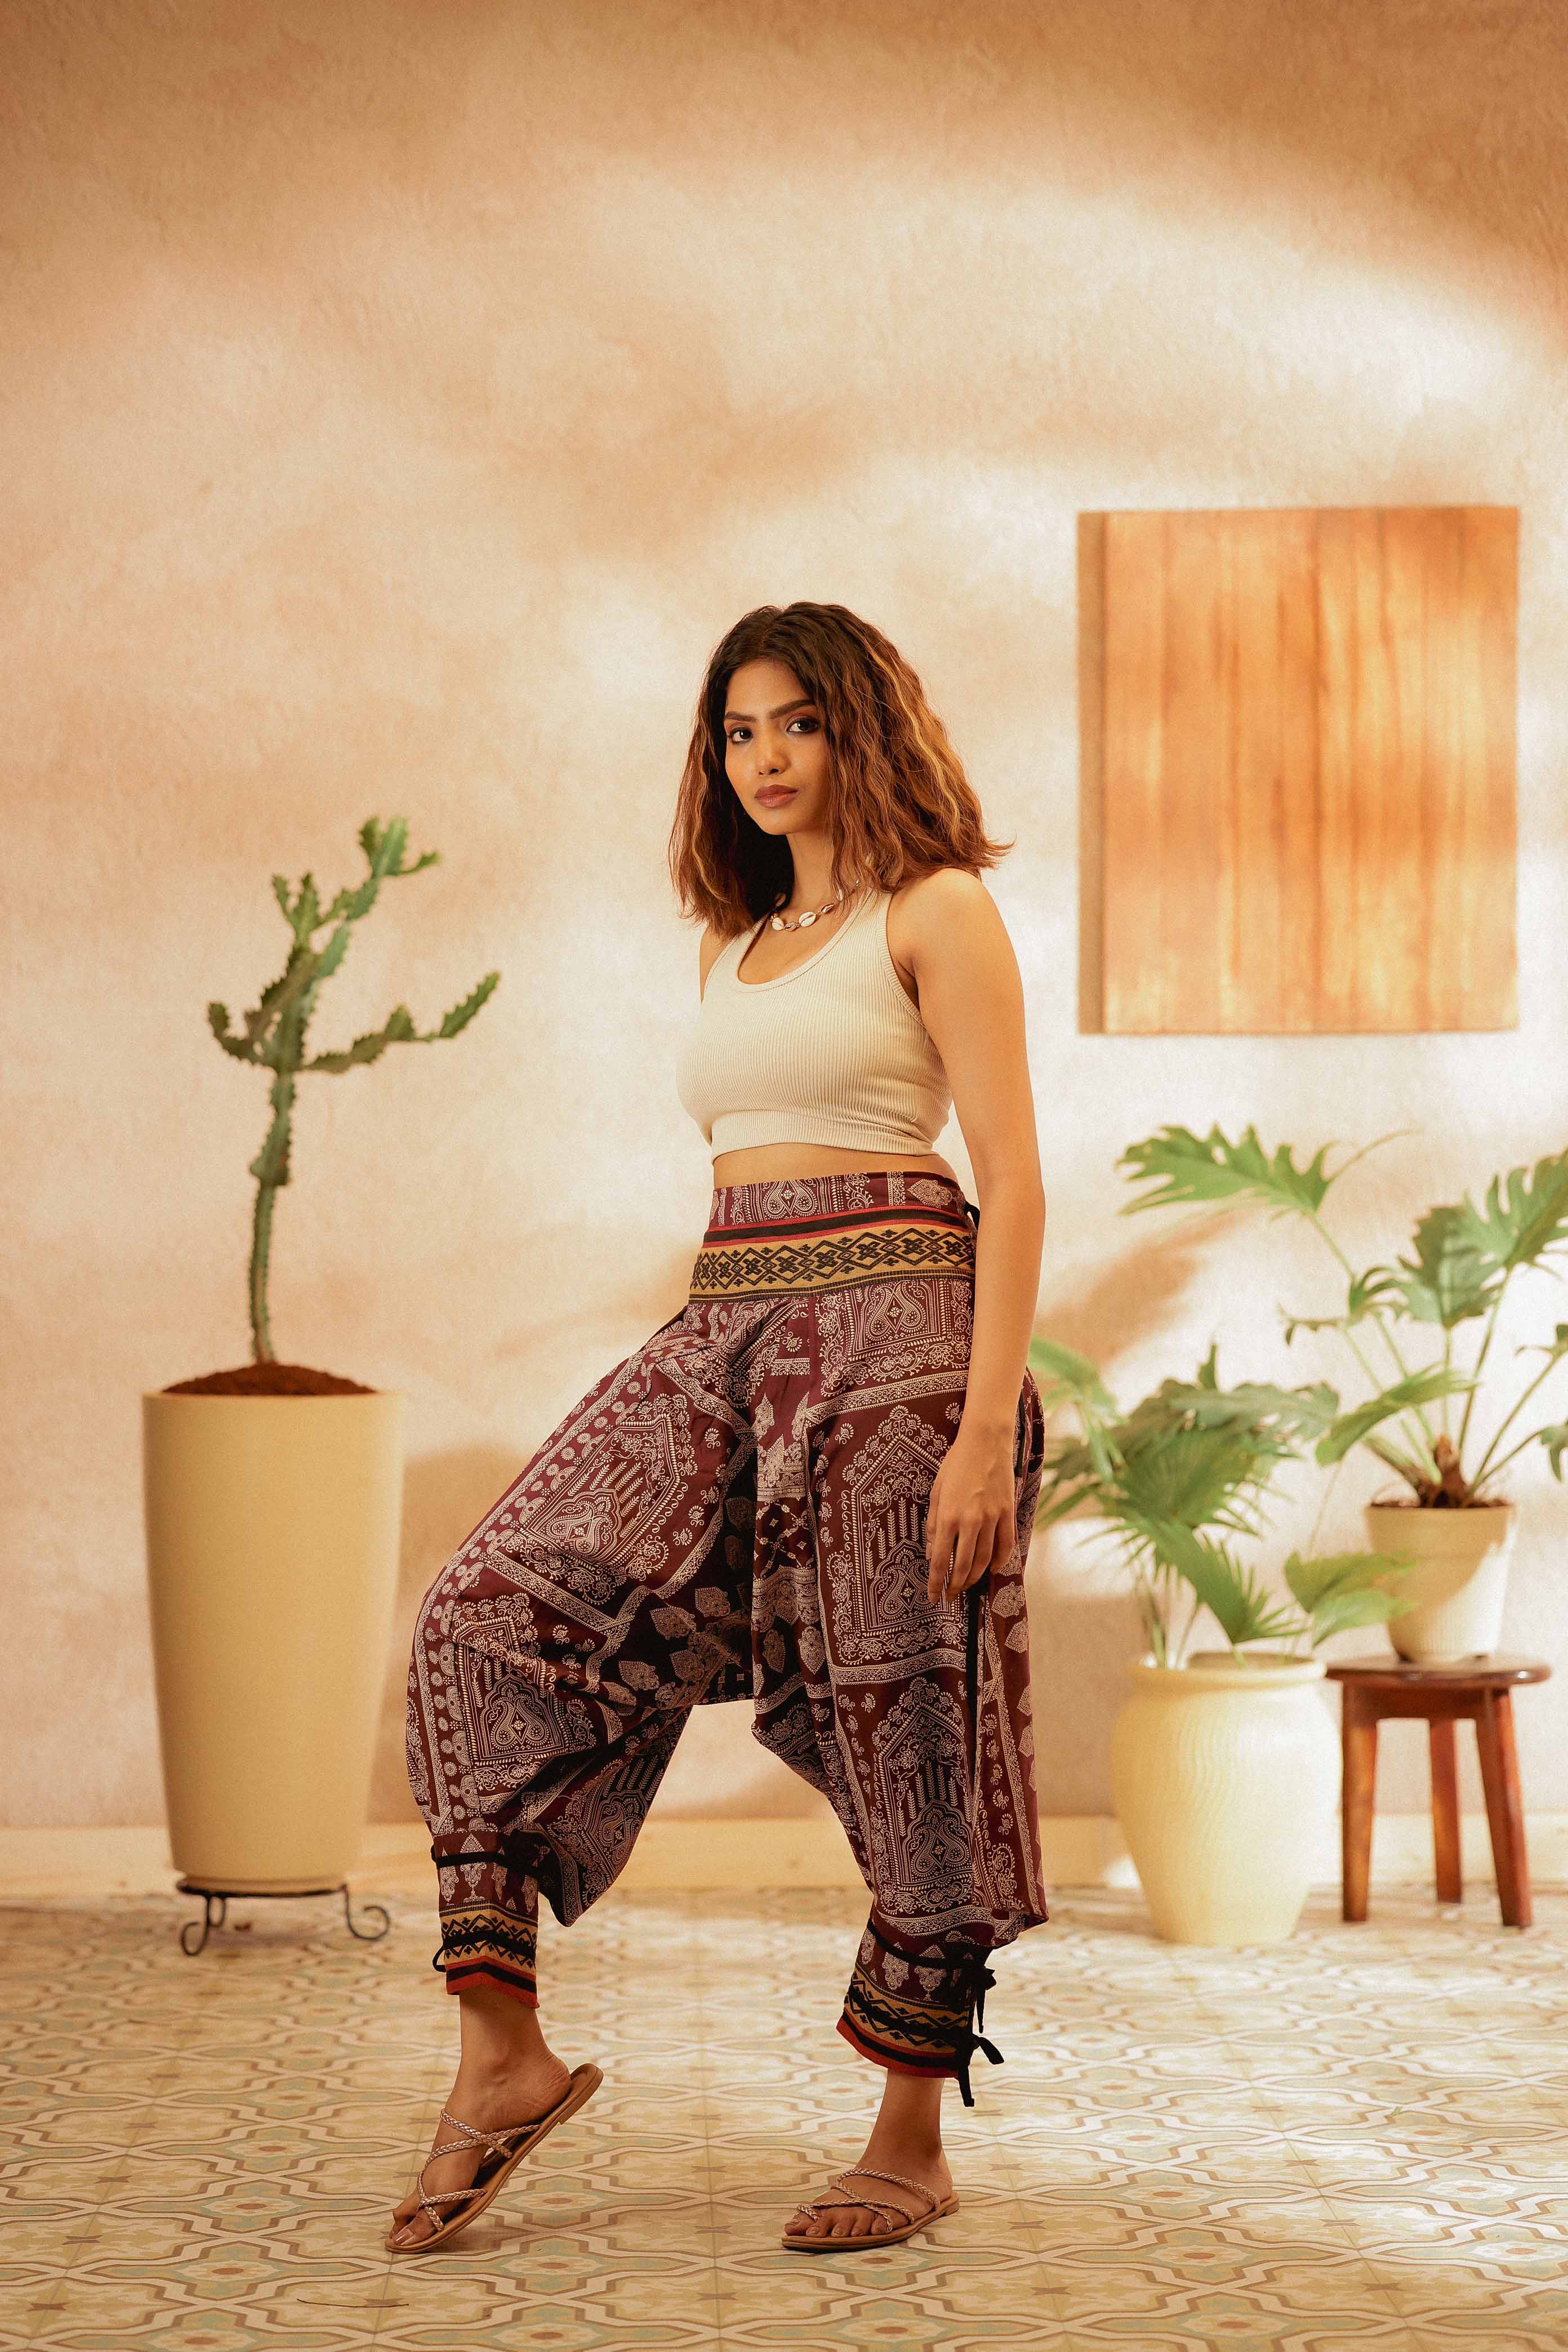 Buy Viku Women's Cotton Harem Pants, Free Size, Brown, Orange, Cream at  Amazon.in